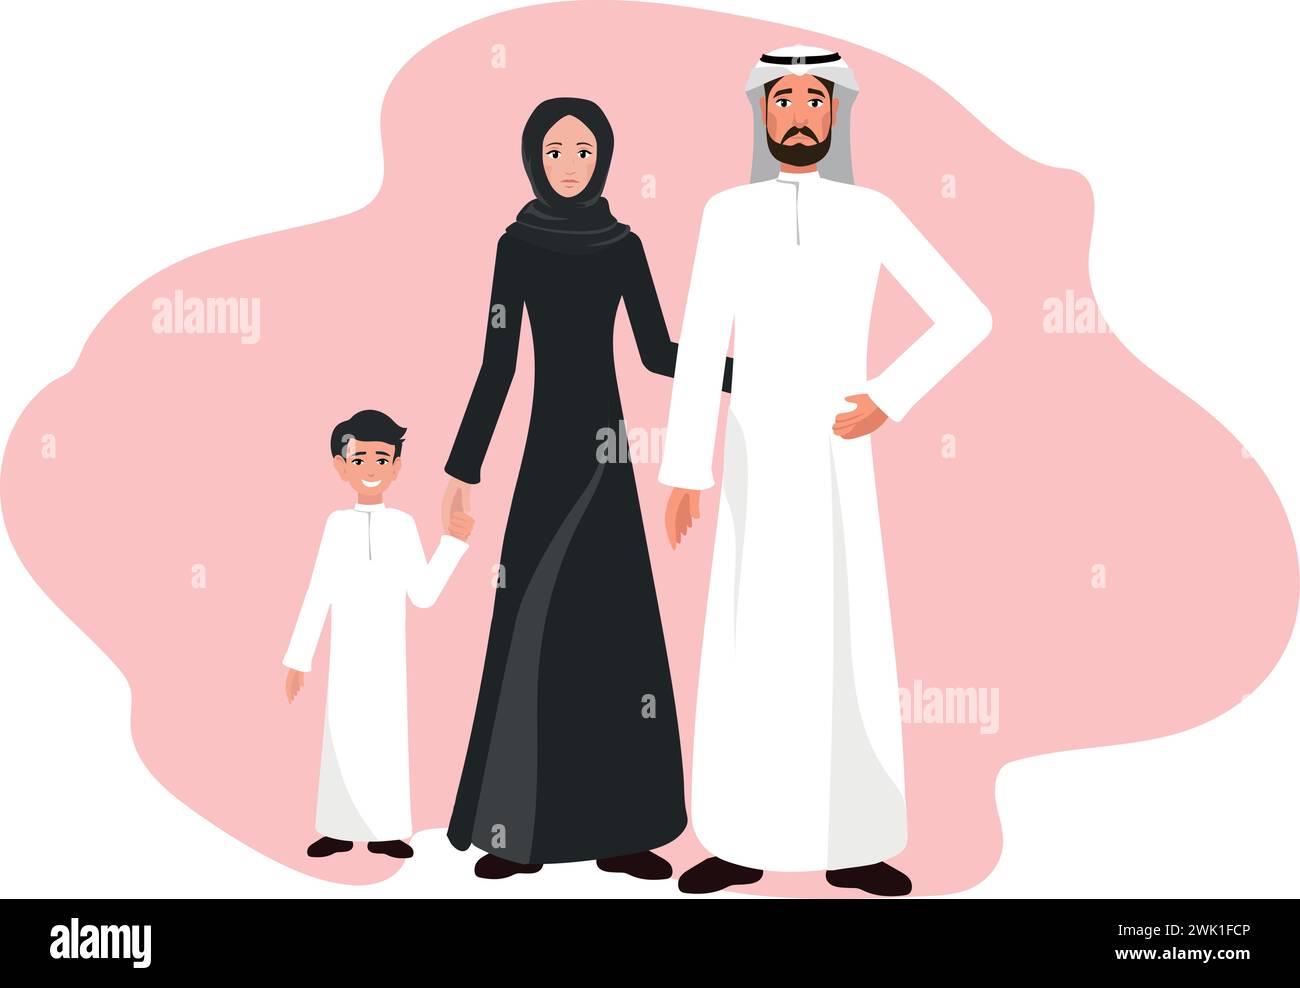 Muslimische arabische Familie in traditioneller islamischer Kleidung, versammelt mit ihrem Kind. Hochformat in voller Länge. Vektorabbildung. Stock Vektor